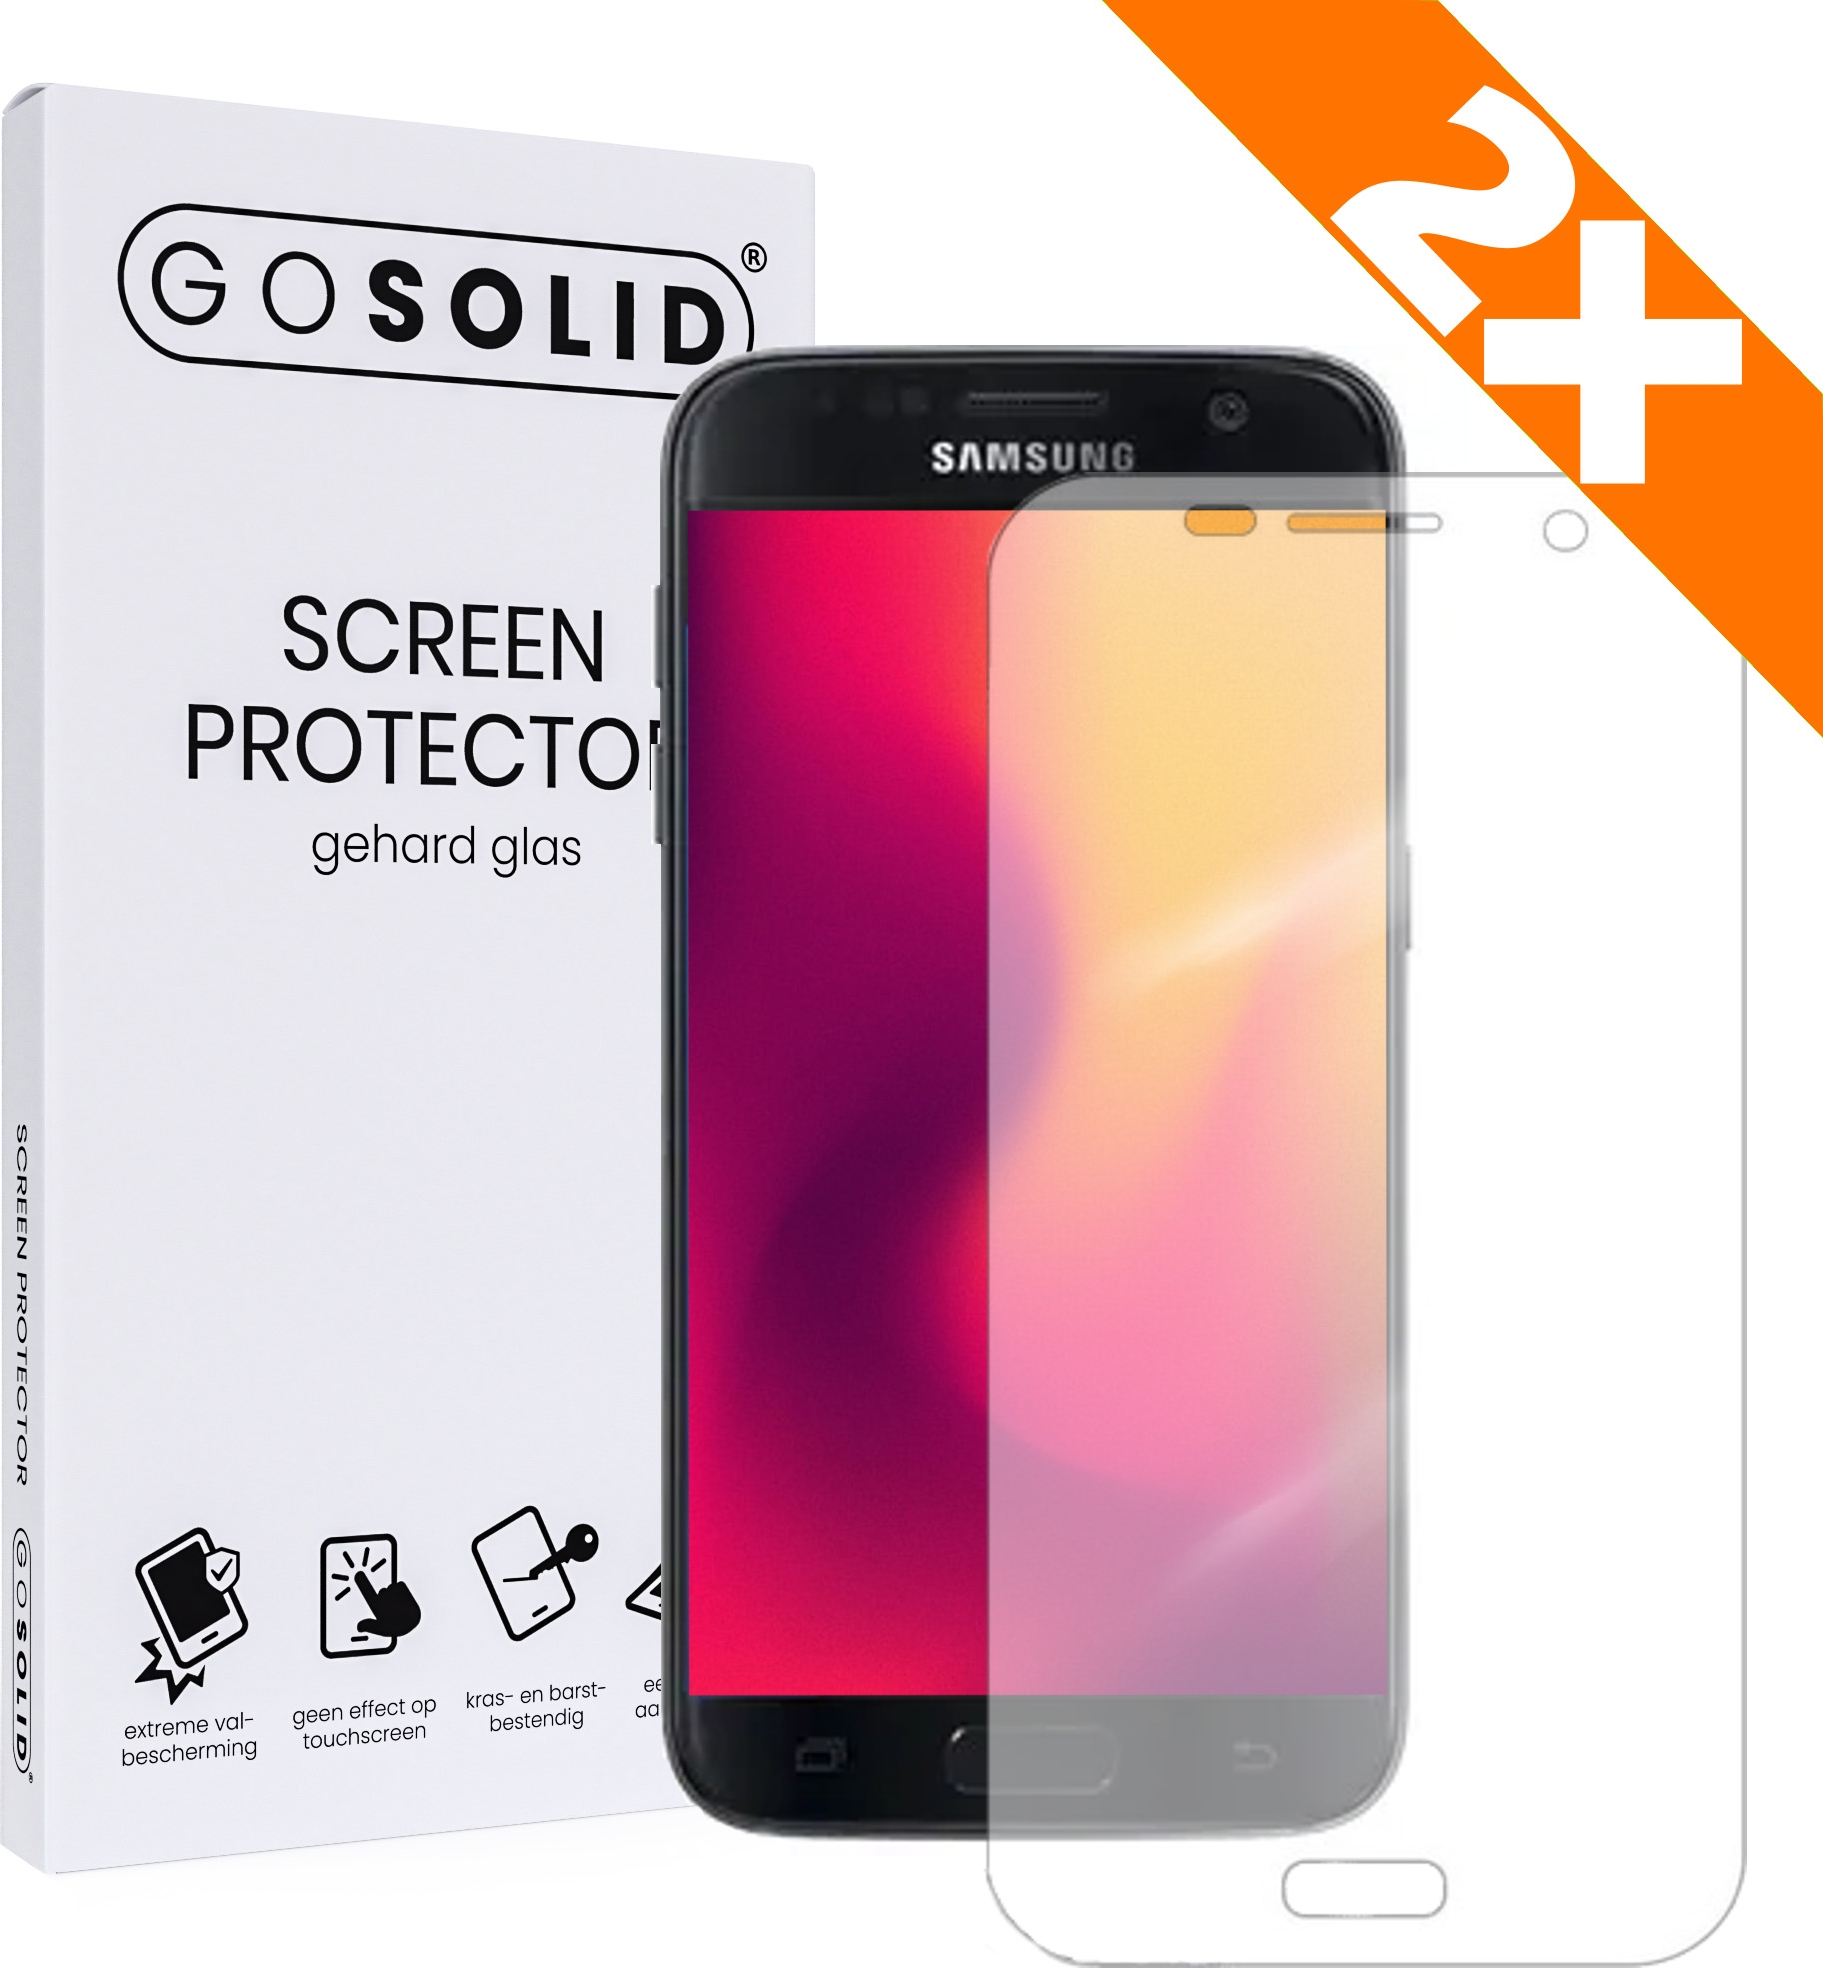 hardop verkiezen Telegraaf ᐅ • GO SOLID! Screenprotector voor Samsung Galaxy S6 Edge Plus - Duopack |  Eenvoudig bij ScreenProtectors.nl